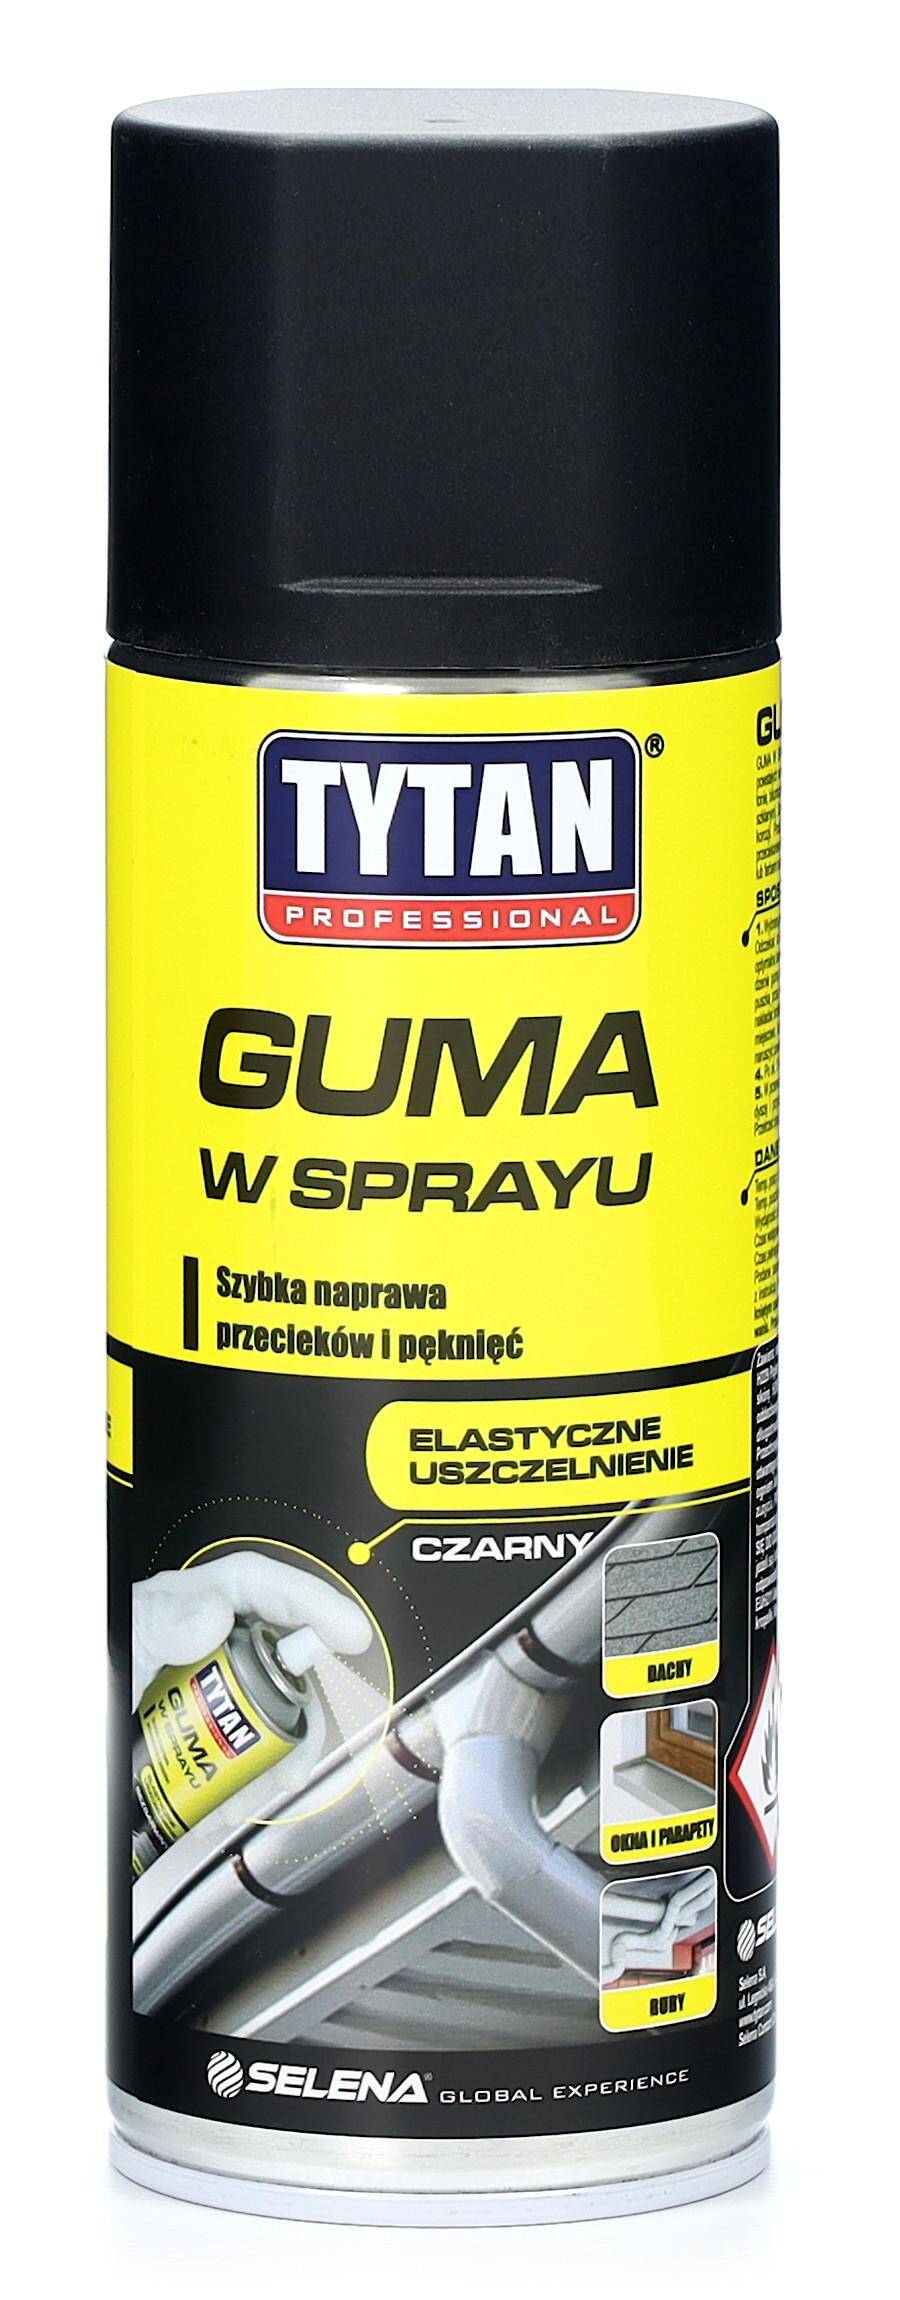 Guma w sprayu TYTAN Professional 400 ml czarna uszczelniacz szybka naprawa